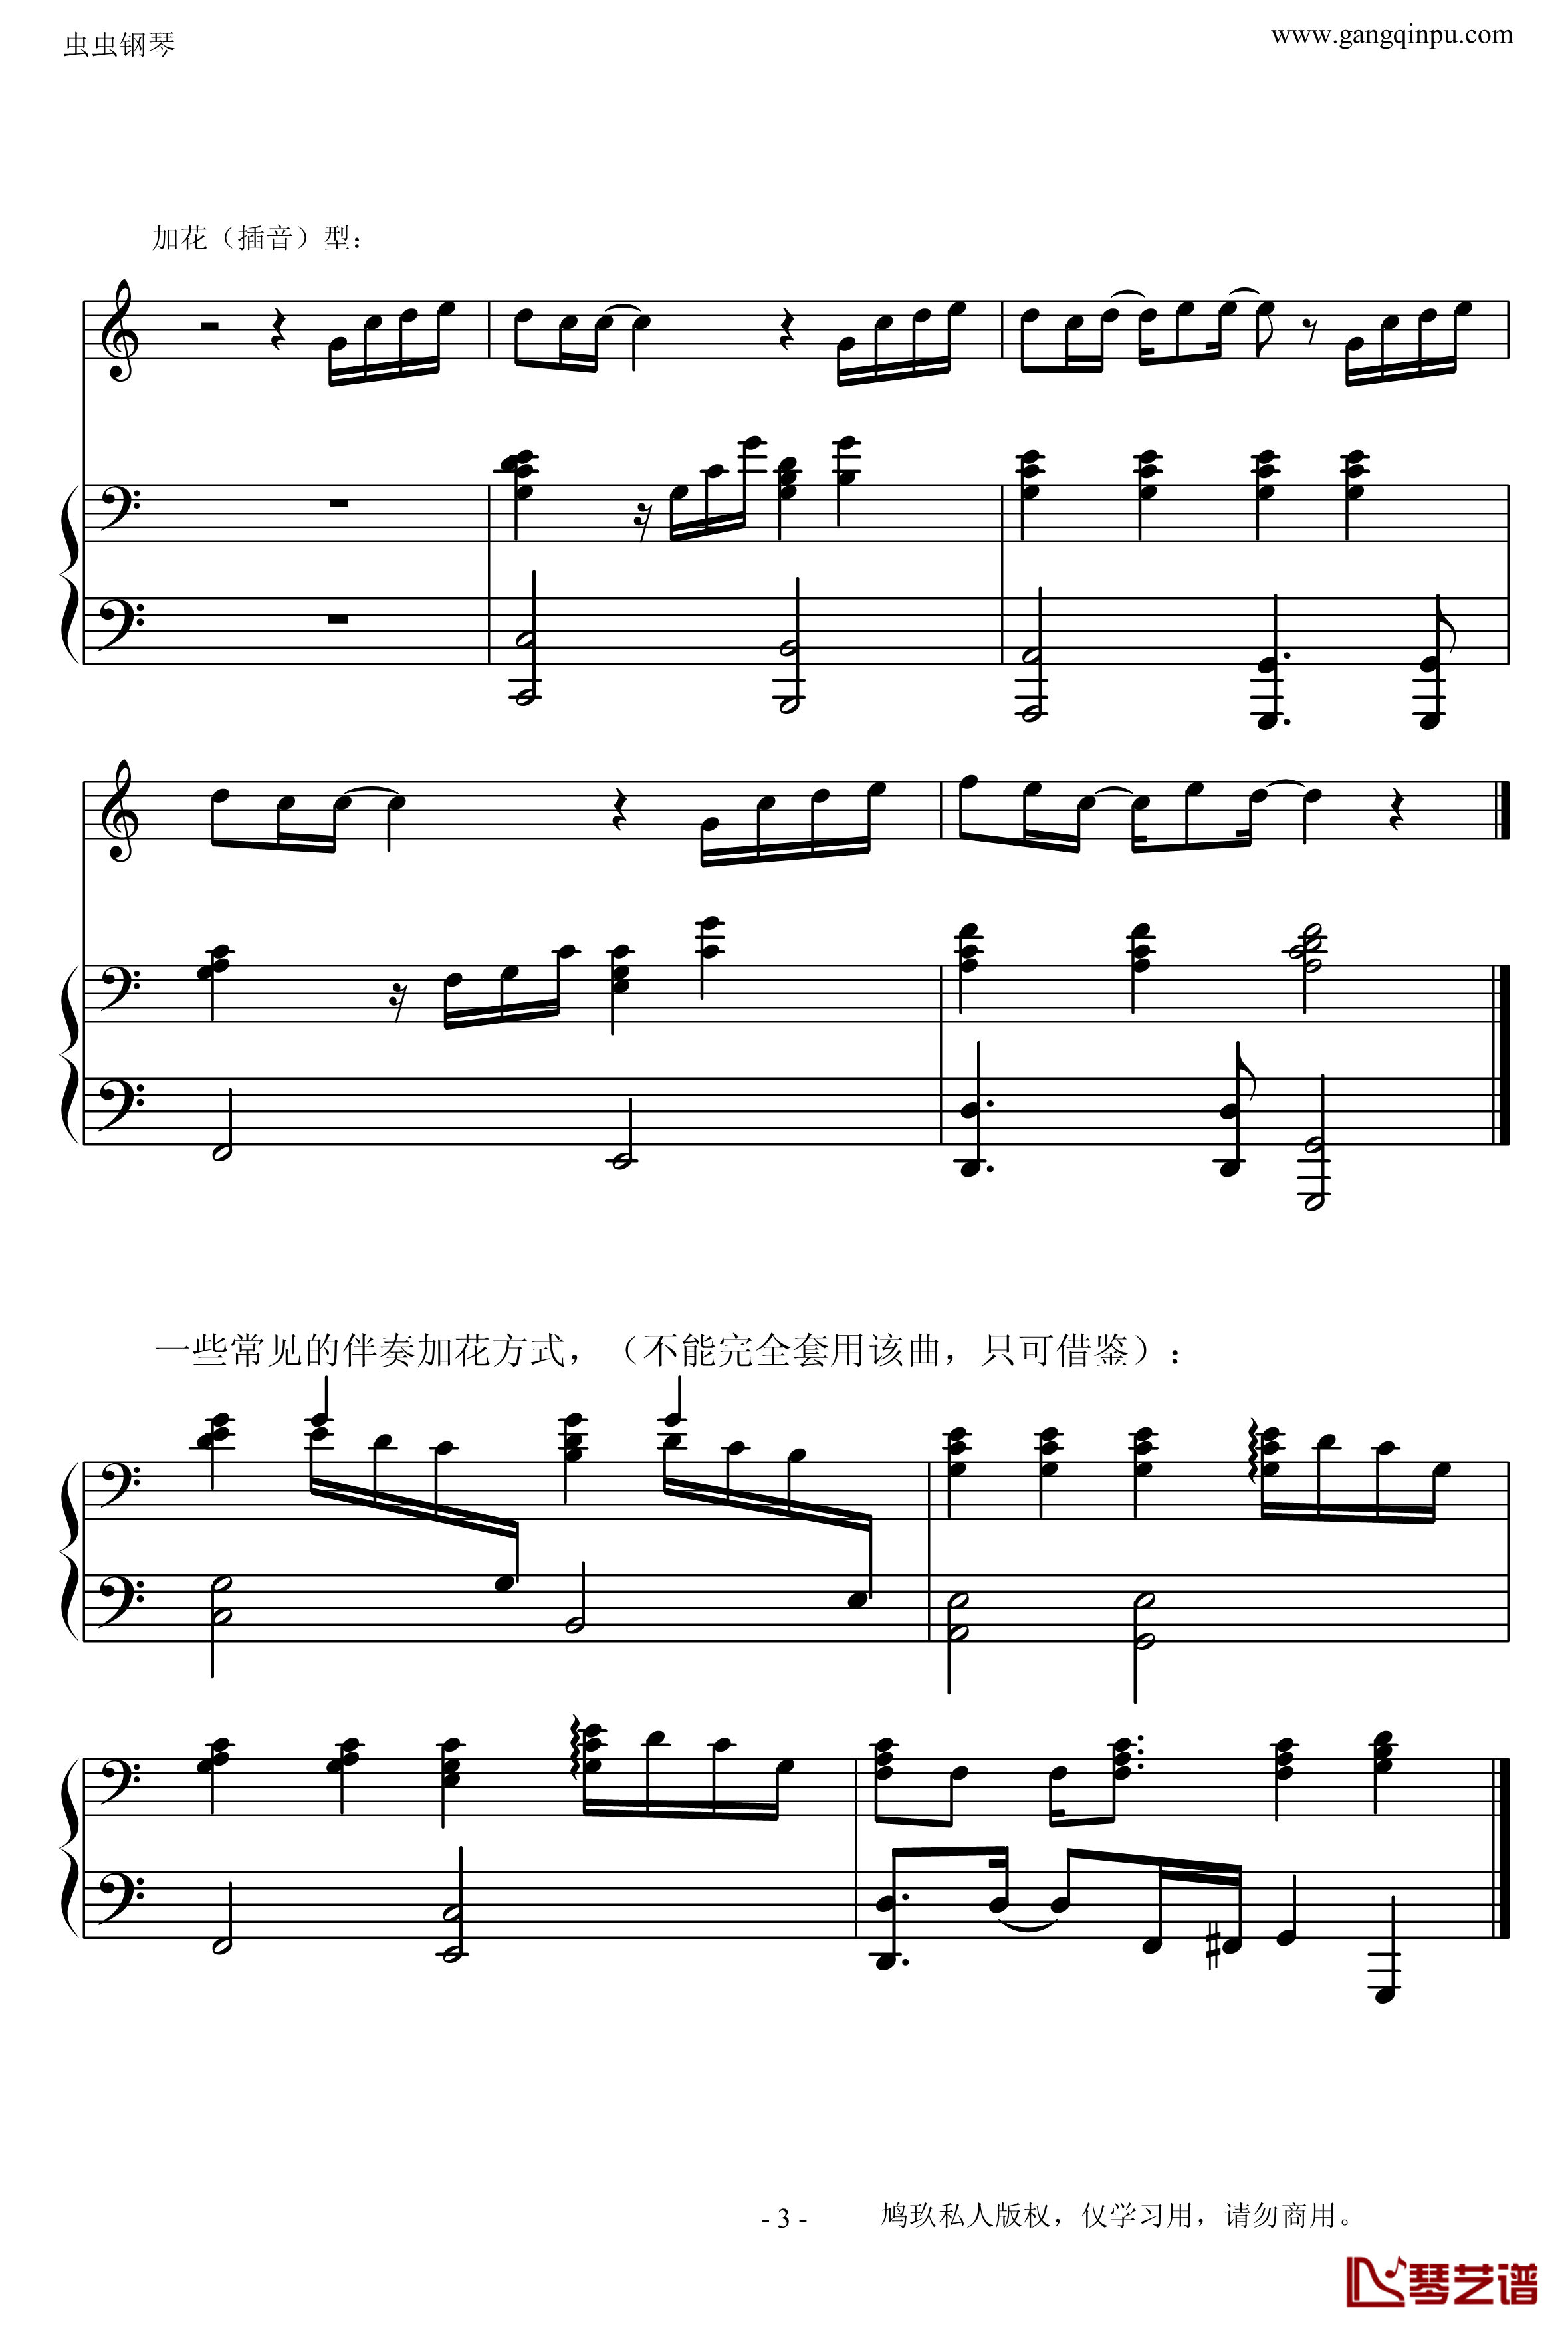 菊次郎的夏天钢琴谱-改编的-示范钢琴弹唱的常见伴奏型久石让3